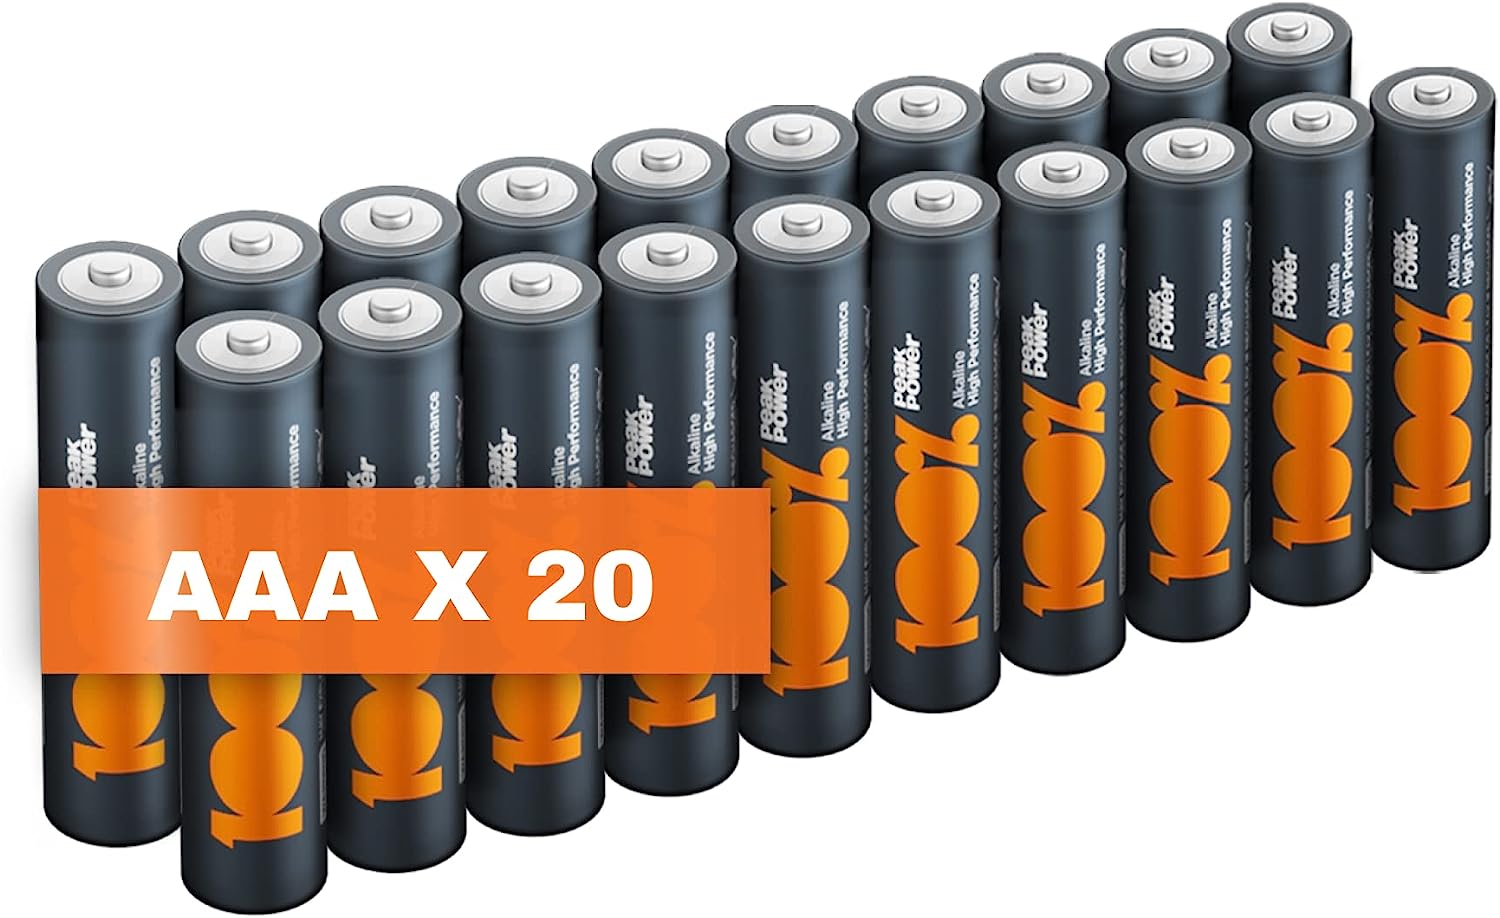 Piles AAA - Lot de 40, 100% PEAKPOWER, Batteries Alcalines AAA LR03 1,5v, Longue durée, haute performance, utilisation quotidienne